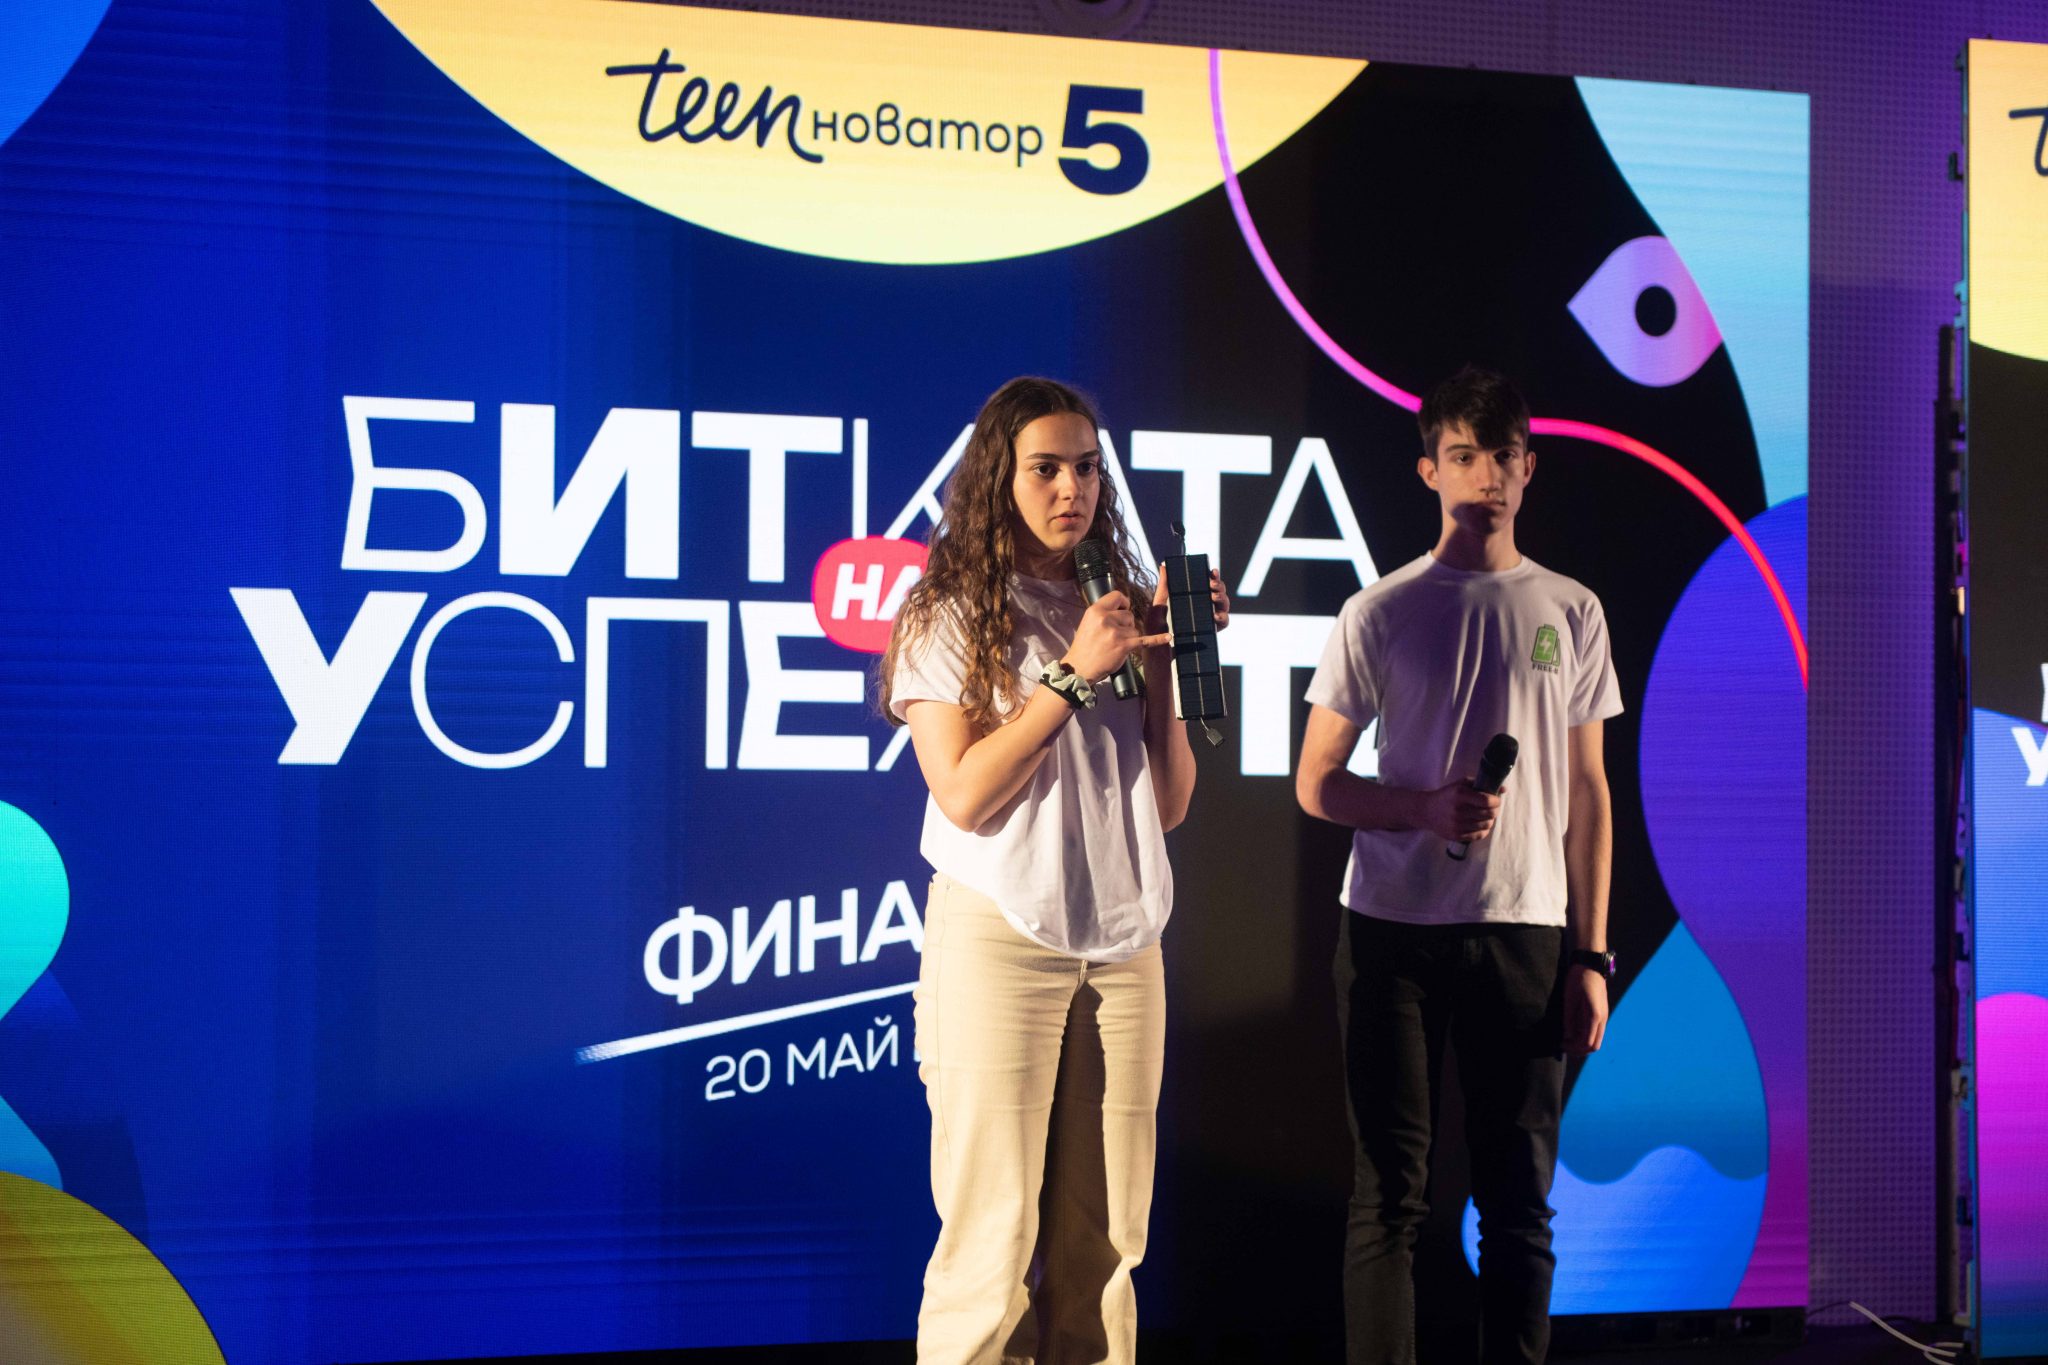 Антония и Мирослав по време на презентацията си на Финала на Тийноватор 5